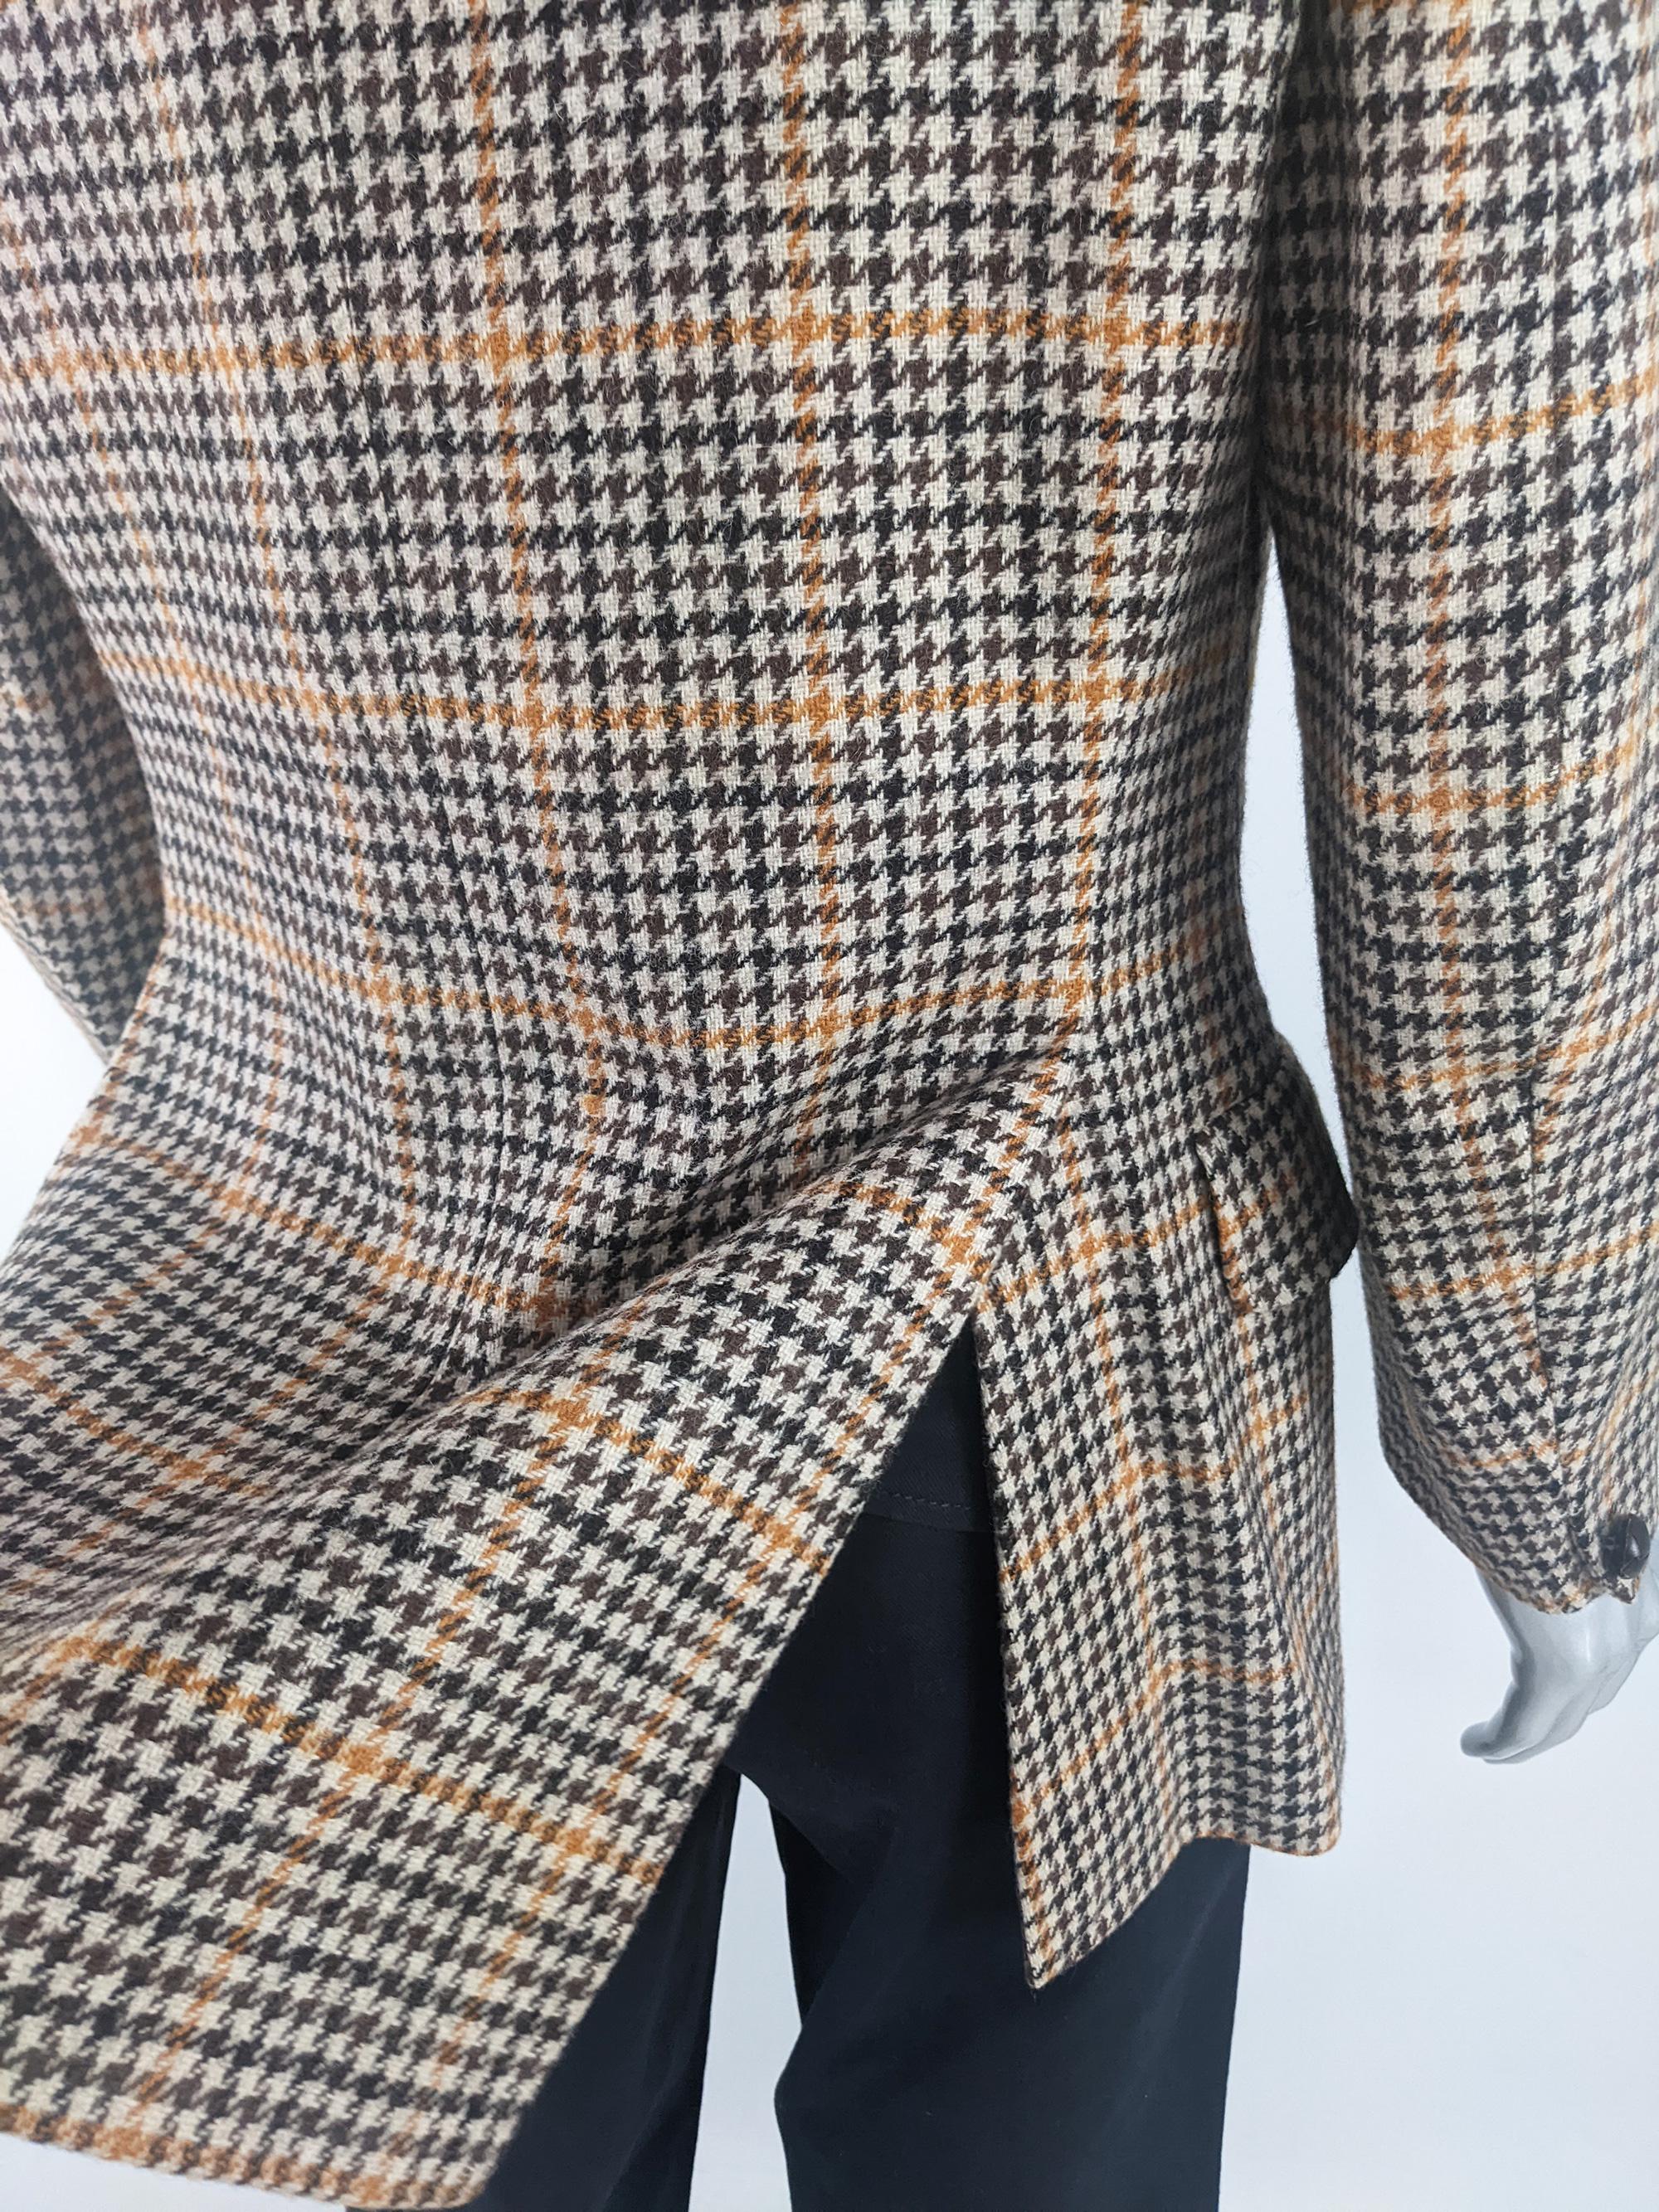 Men's Austin Reed Vintage Mens Wool Tweed & Suede Shooting Blazer Jacket, 1970s For Sale